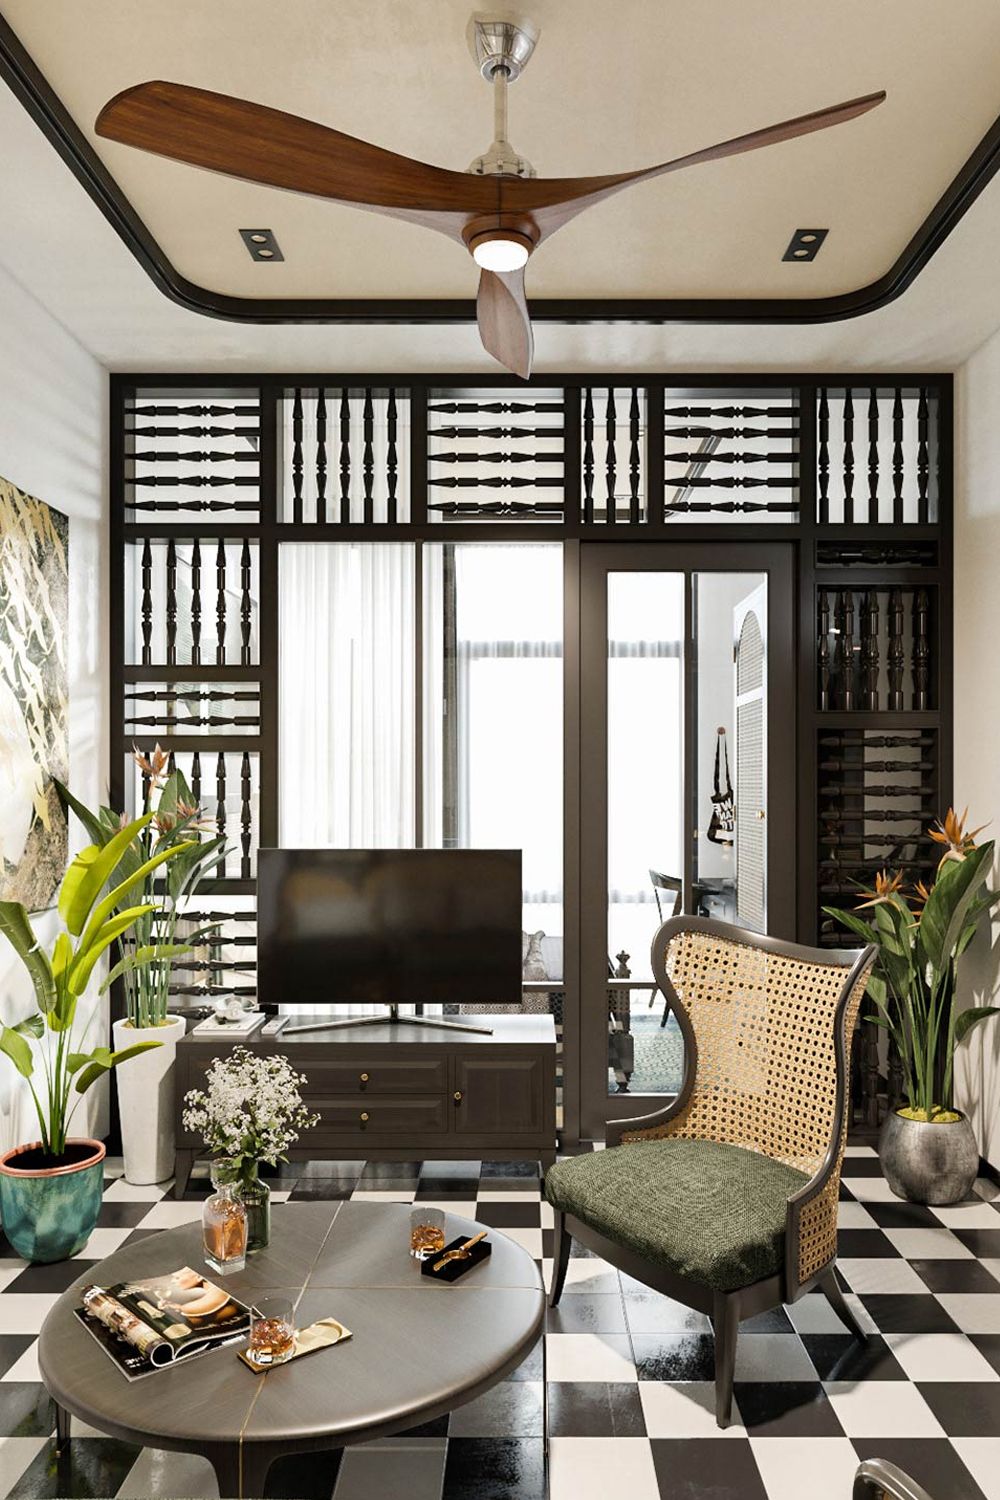 Phong cách nội thất Đông Dương được bao phủ bởi vẻ đẹp đậm chất truyền thống 